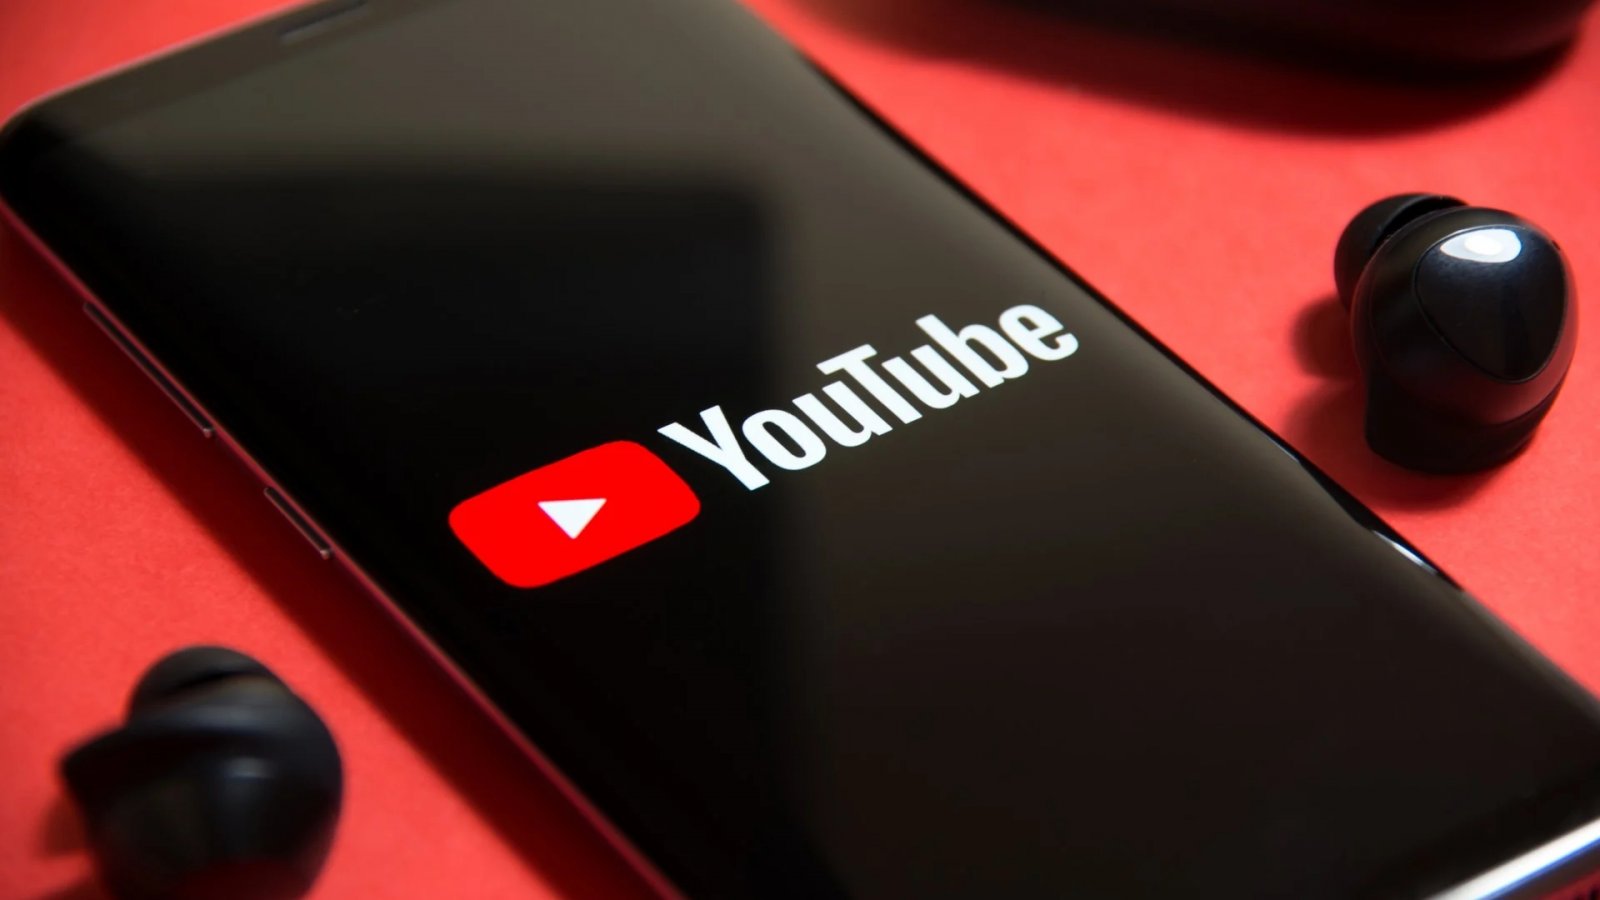 Il logo di YouTube